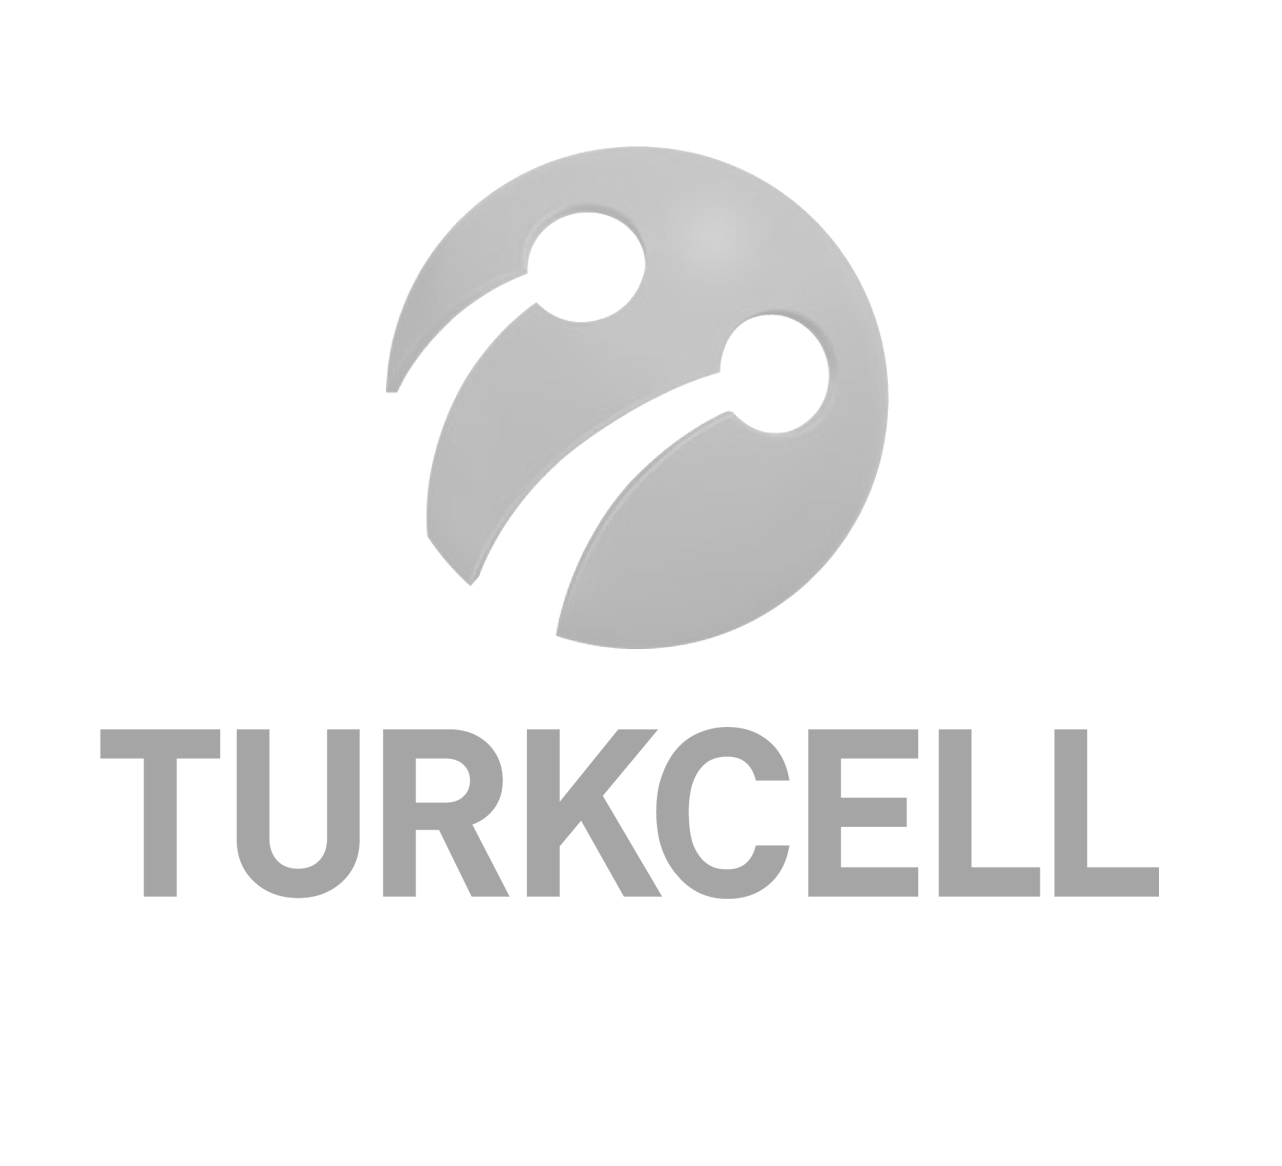 TURKCELL logo